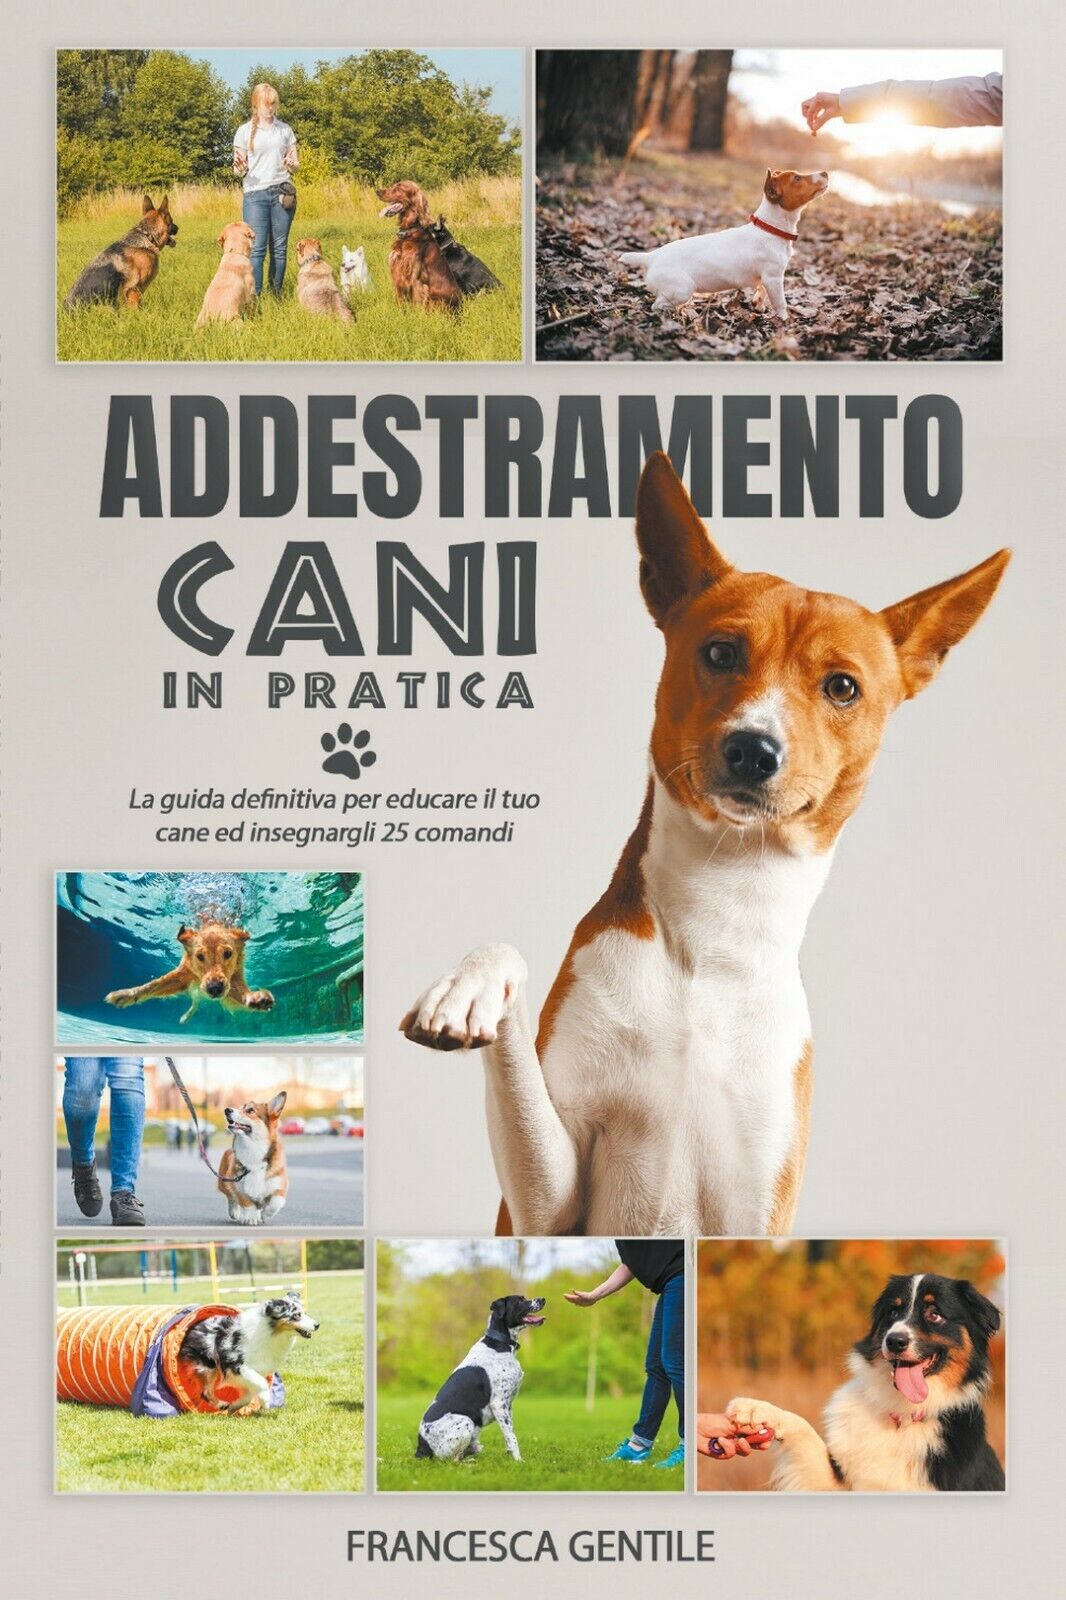 Addestramento cani in pratica  di Francesca Gentile,  2021,  Youcanprint